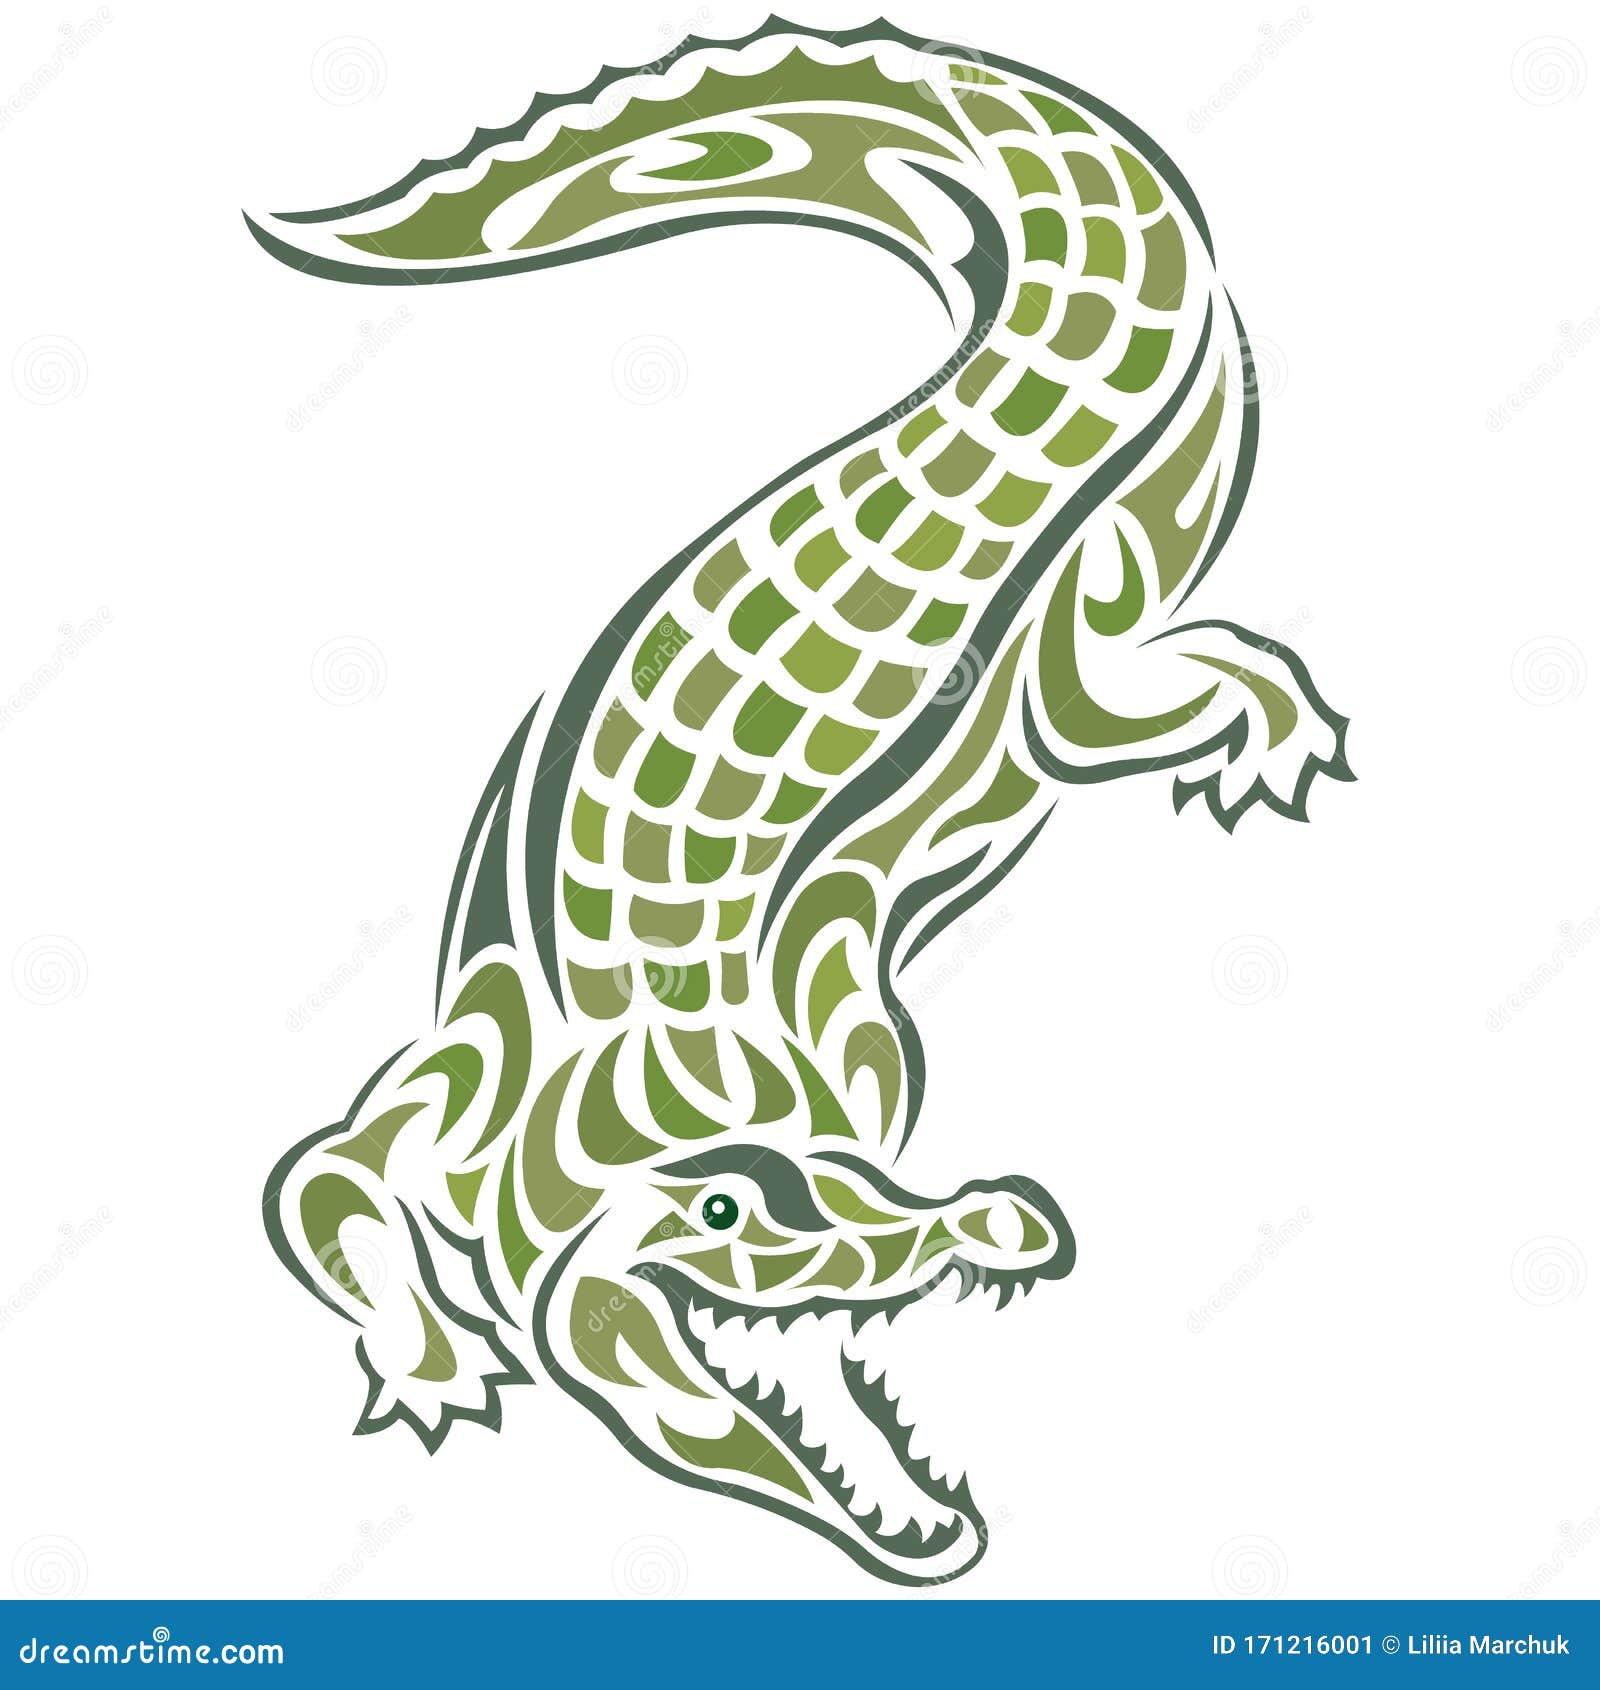 Silueta Cocodrilo Dibujada Por Varias Líneas Verdes Sobre Un Fondo Blanco  Aislado Tatuaje, Logo De Mascota - Cocodrilo Gracioso Stock de ilustración  - Ilustración de arte, emblema: 171216001